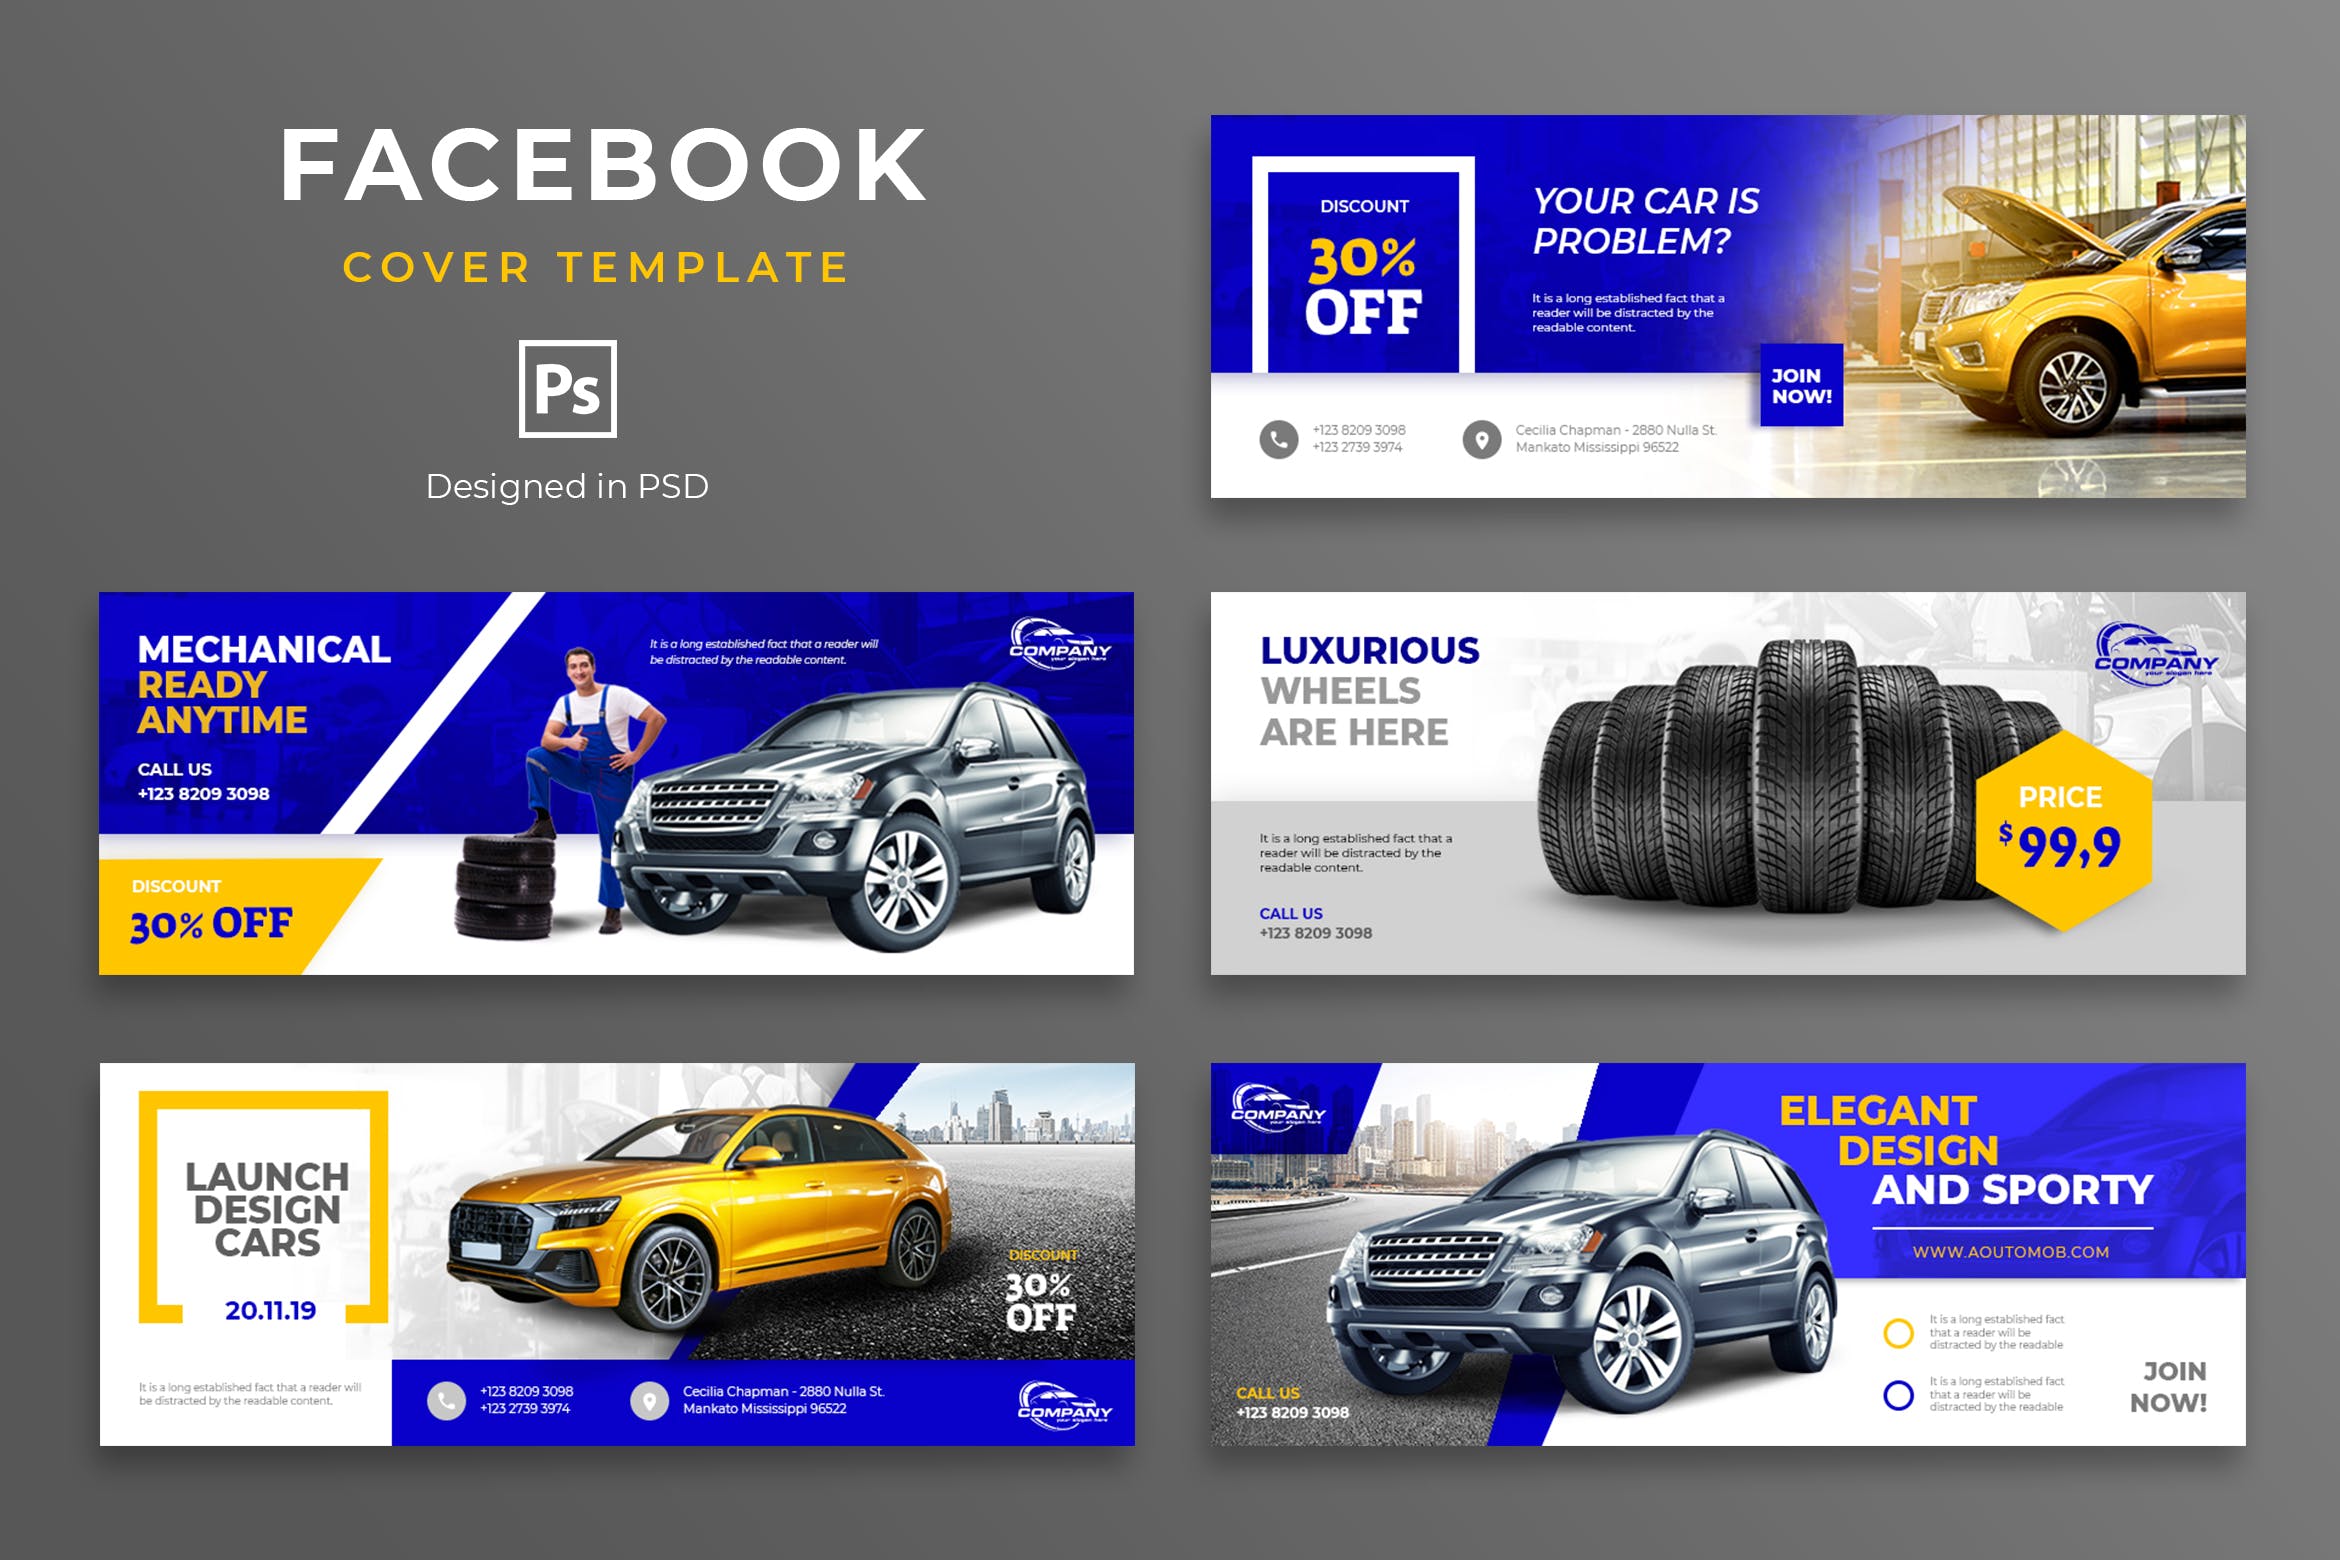 汽车品牌Facebook营销推广主页封面设计模板第一素材精选 Automotive Facebook Cover Template插图